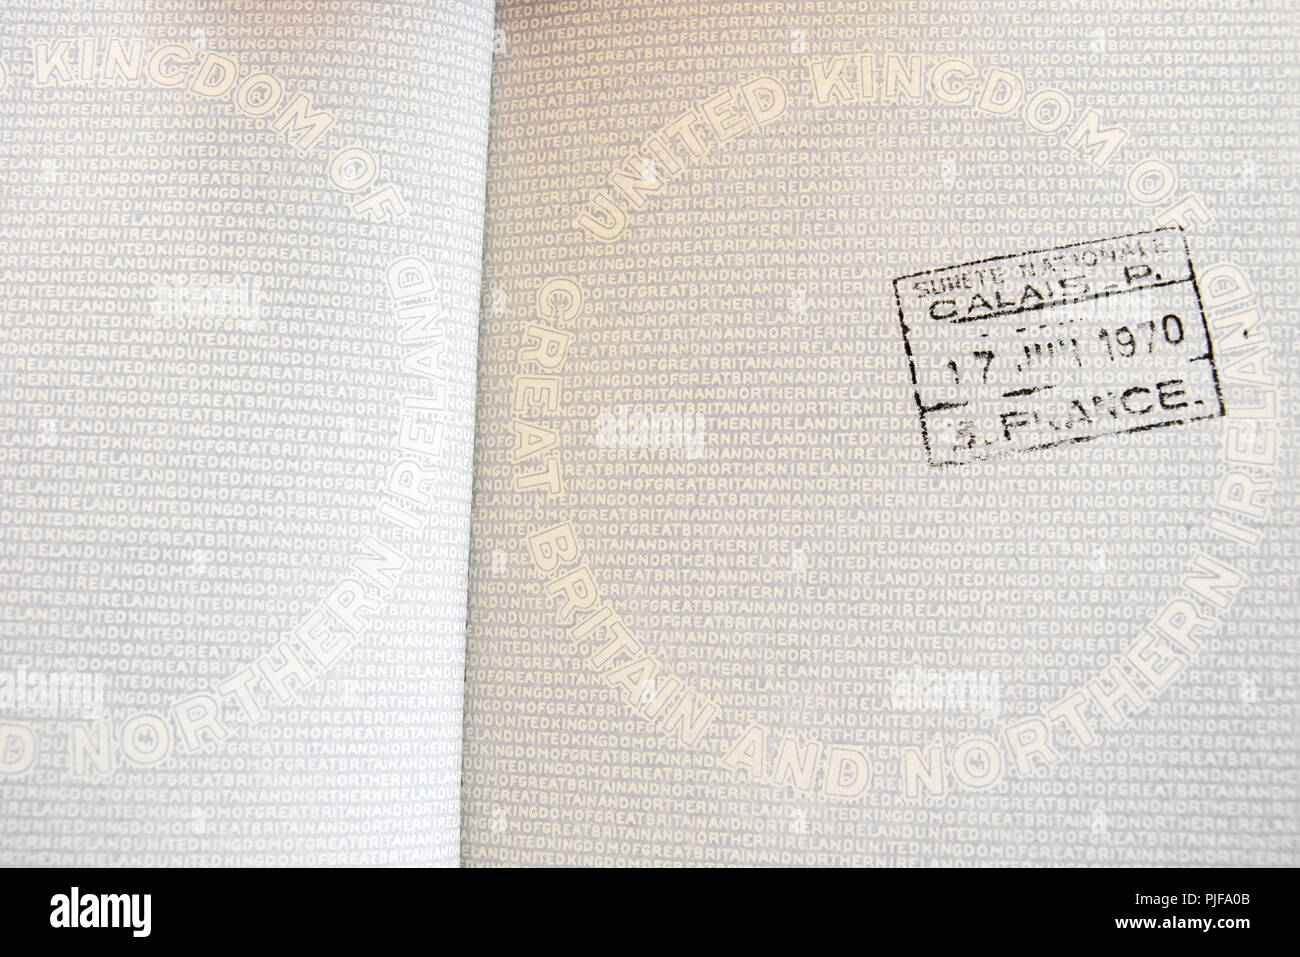 Reino Unido pasaporte británico. Original de Reino Unido de Gran Bretaña e Irlanda del Norte pasaporte en Calais, Francia, Europa. EU Foto de stock